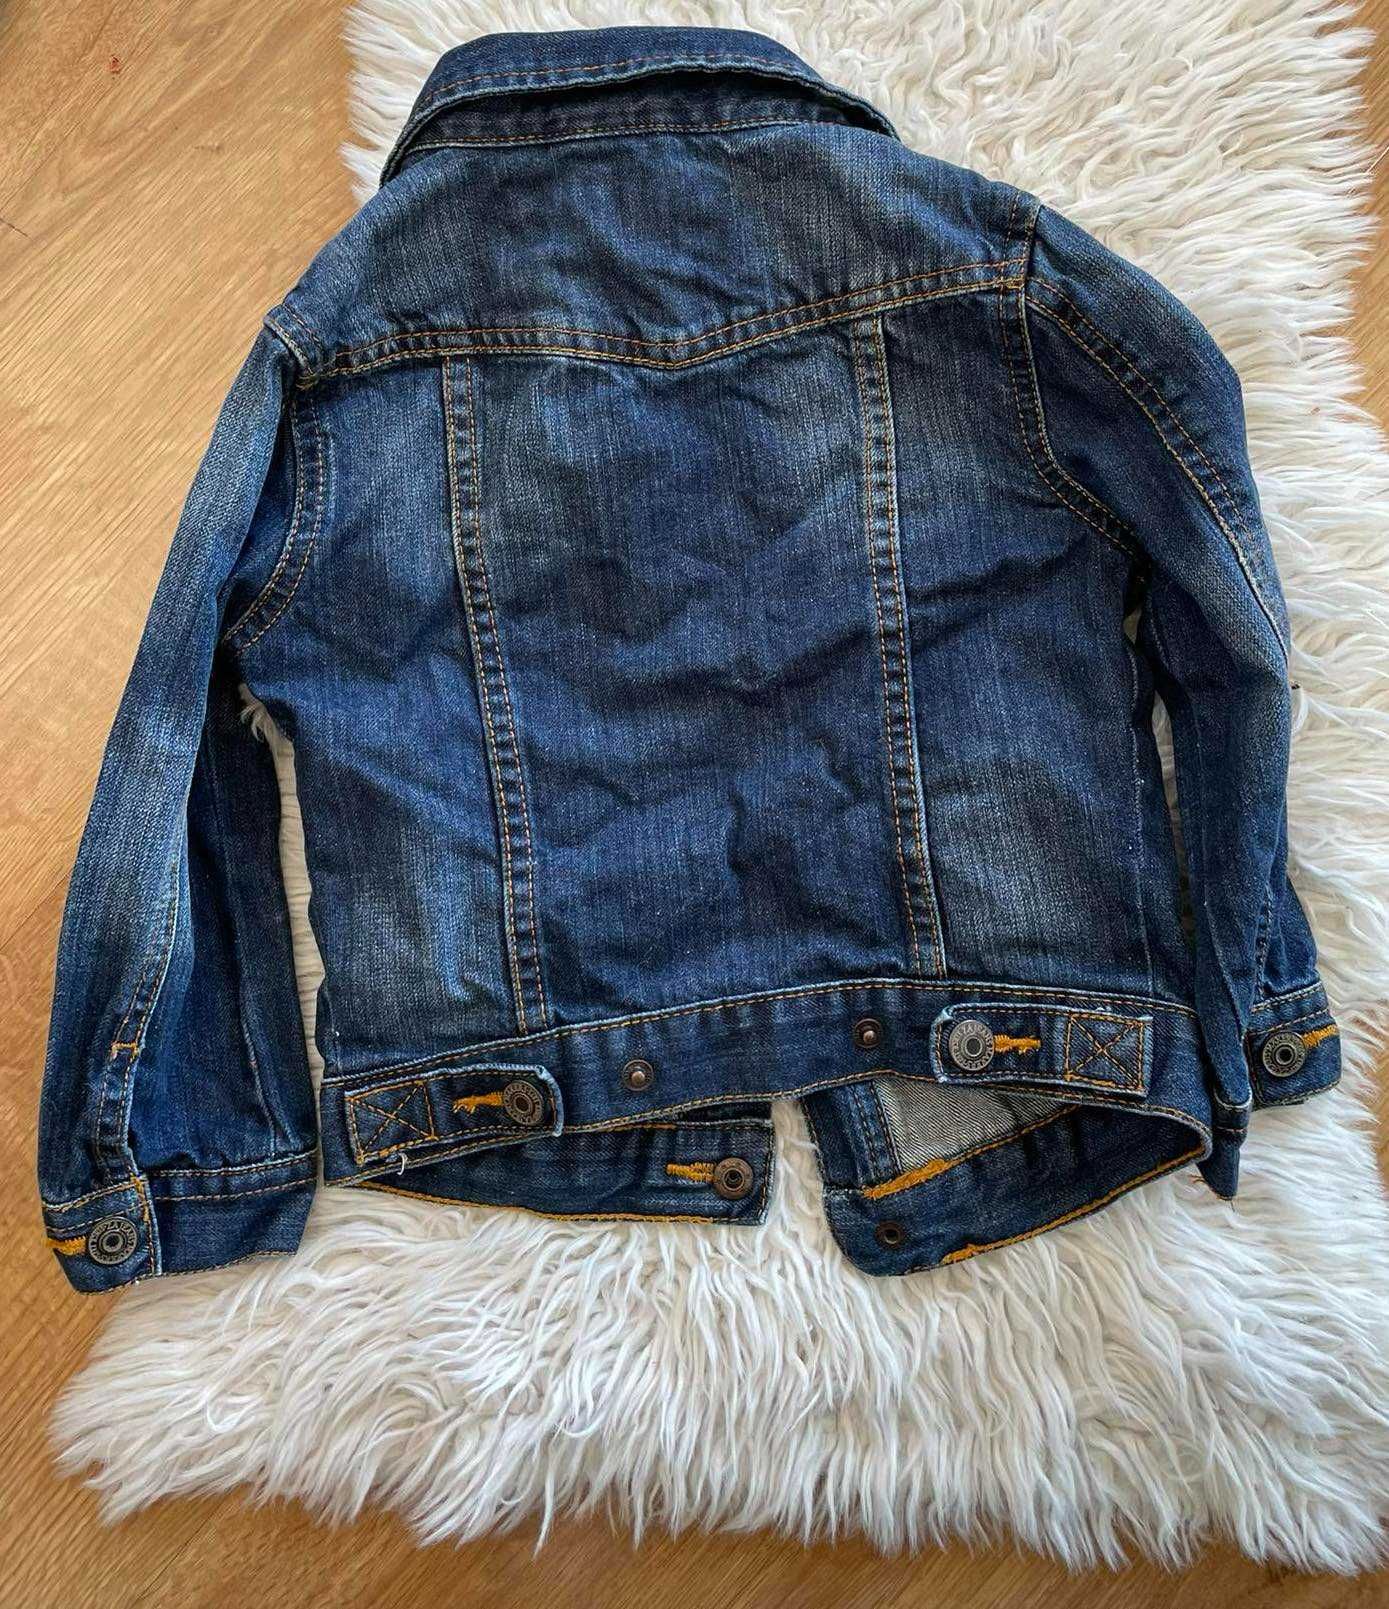 Zara kurtka katana jeansowa 3 - 4 r. ciemna na napy 104